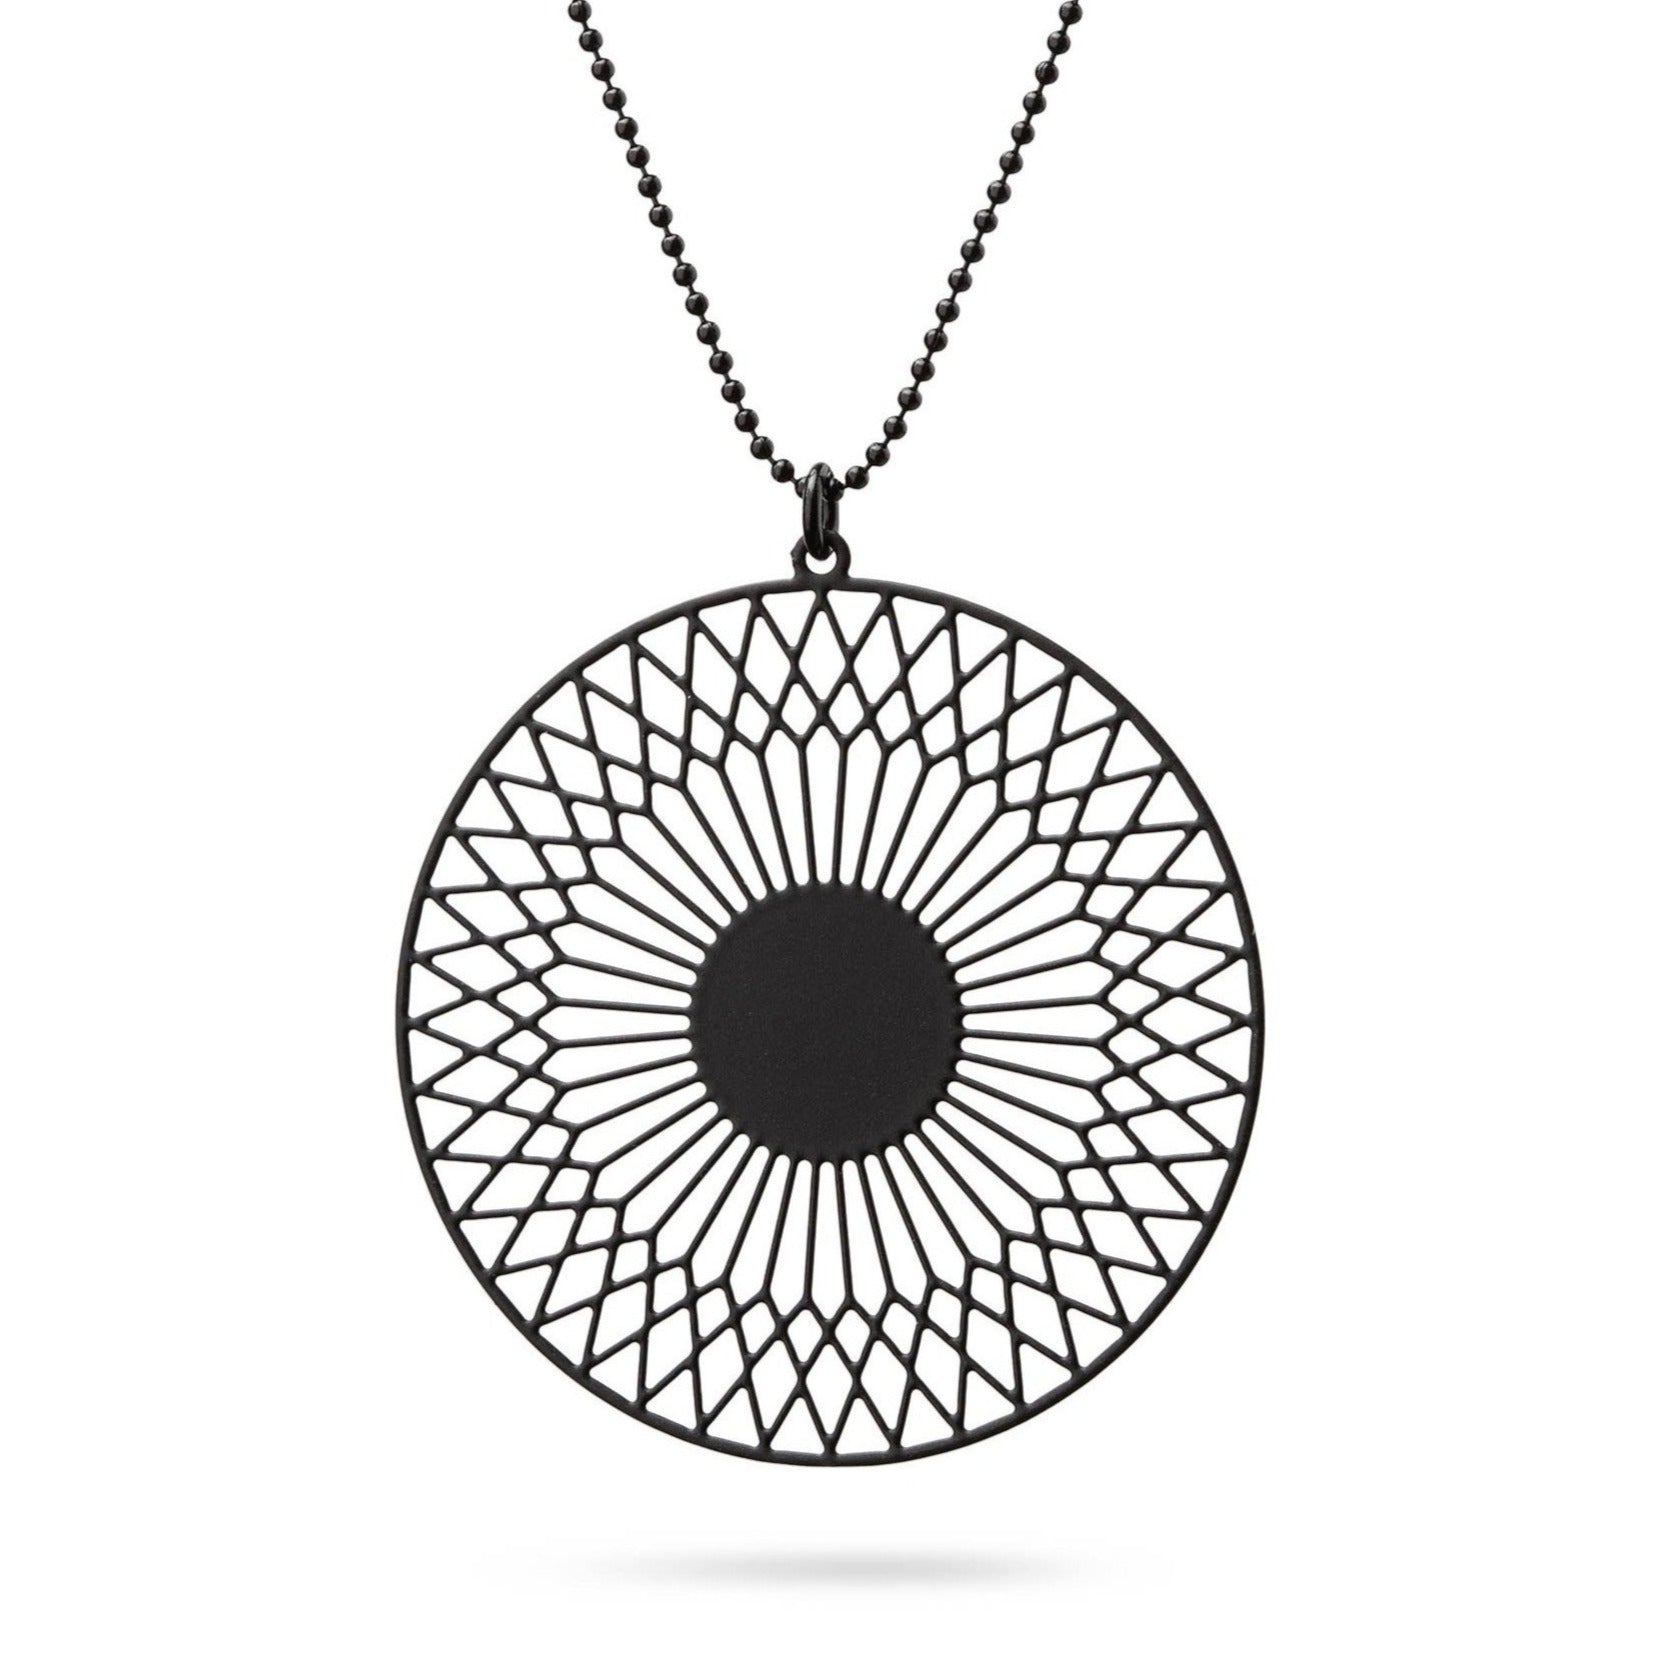 Schwarze Sonne Kettenanhänger  | schwarze Kugelkette - Ausgefallener Designerschmuck, bracelets/Armbänder, earrings/Ohrringe, necklaces/Ketten